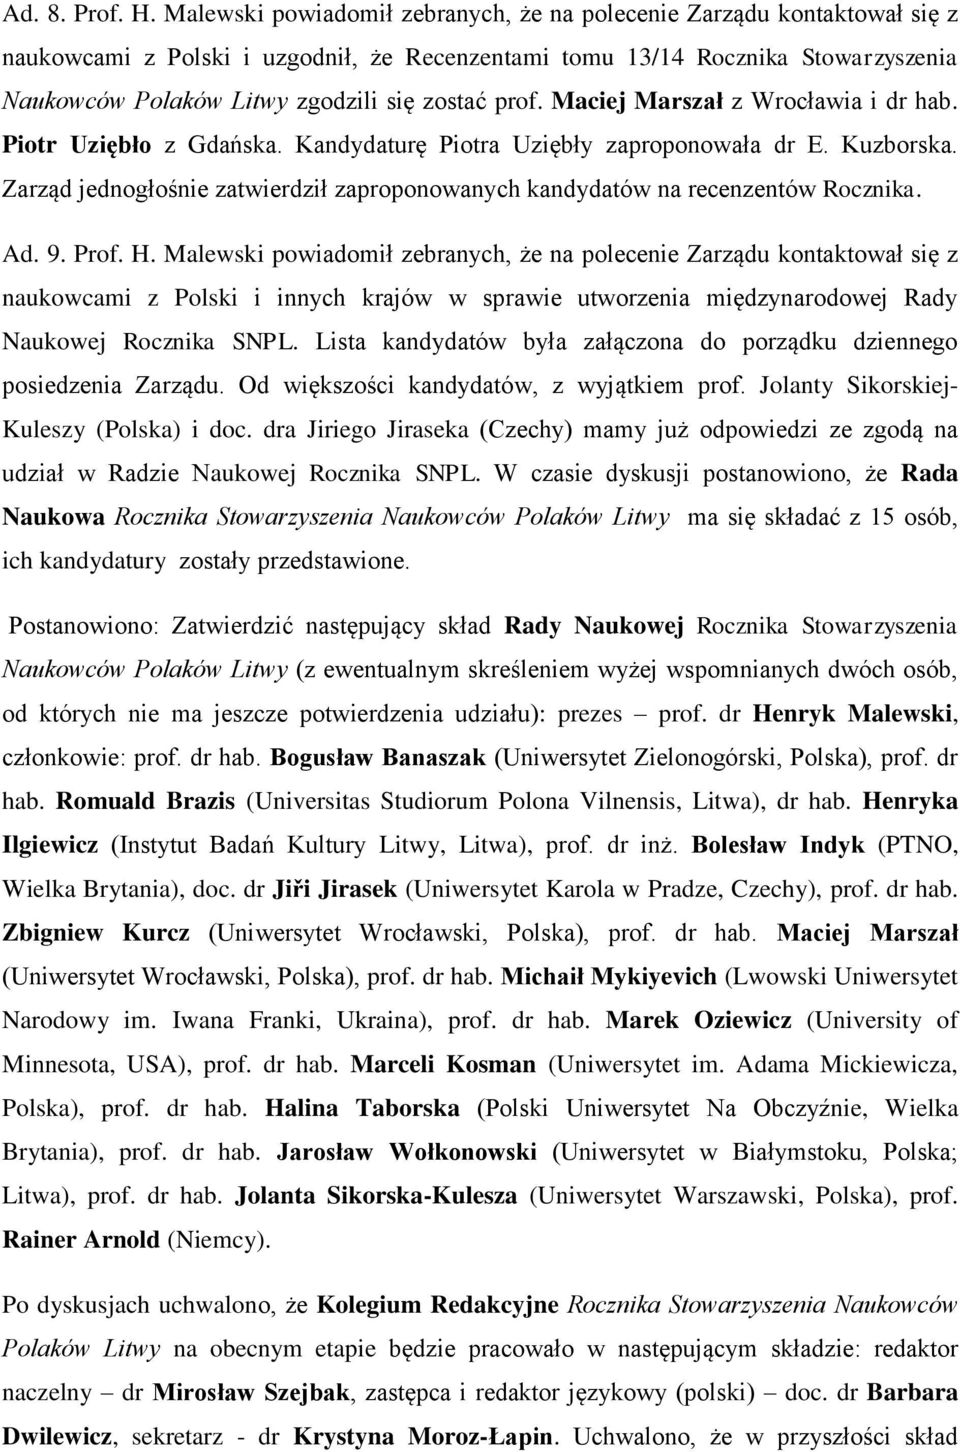 prof. Maciej Marszał z Wrocławia i dr hab. Piotr Uziębło z Gdańska. Kandydaturę Piotra Uziębły zaproponowała dr E. Kuzborska.